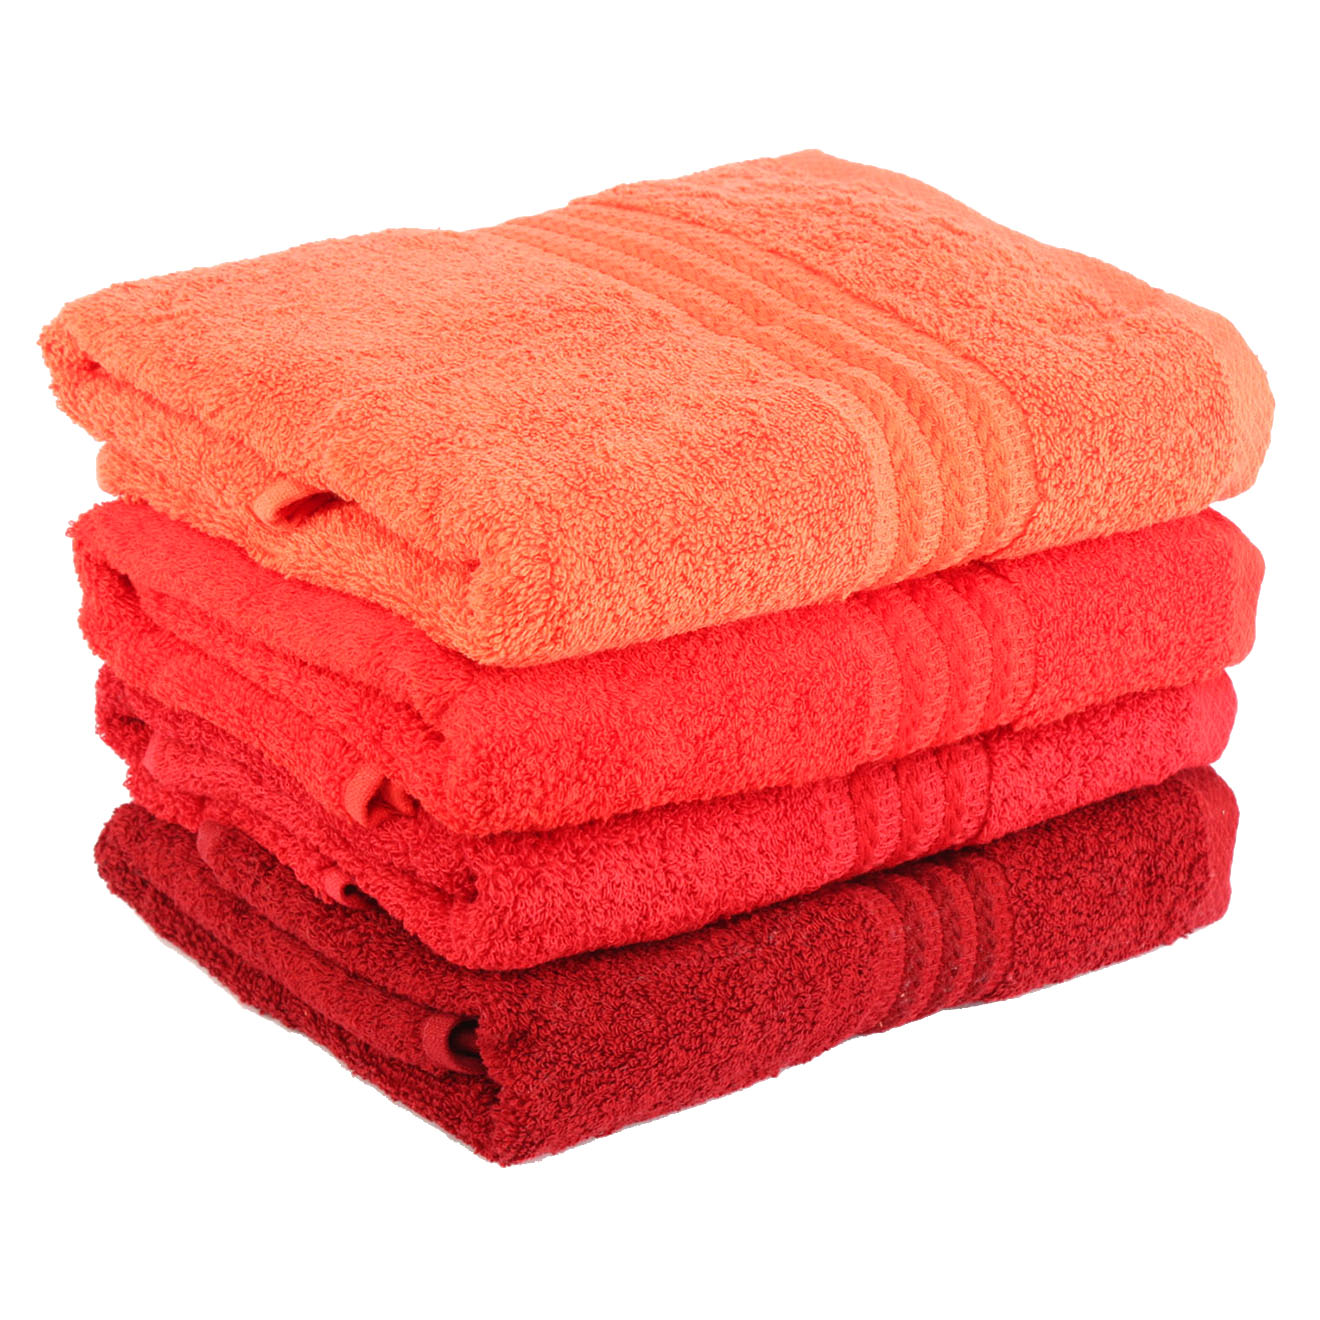 elizabed - 4 serviettes de bain rainbow orange/rouge  - 50x90 cm